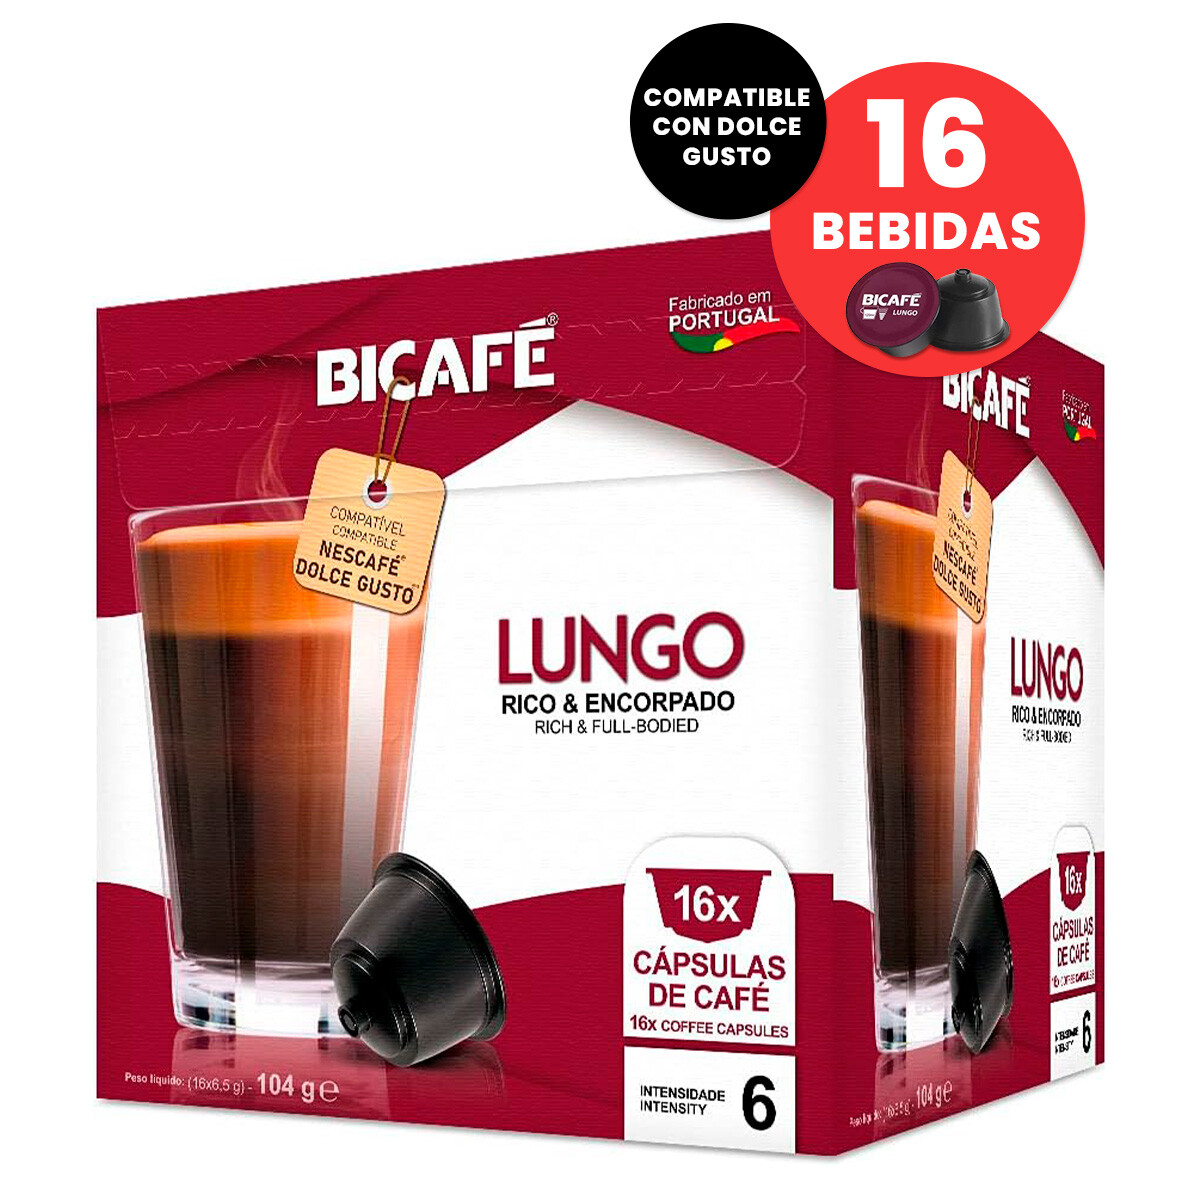 Capsulas Bicafe Lungo Compatible Dolce Gusto X16 Bebidas - 001 